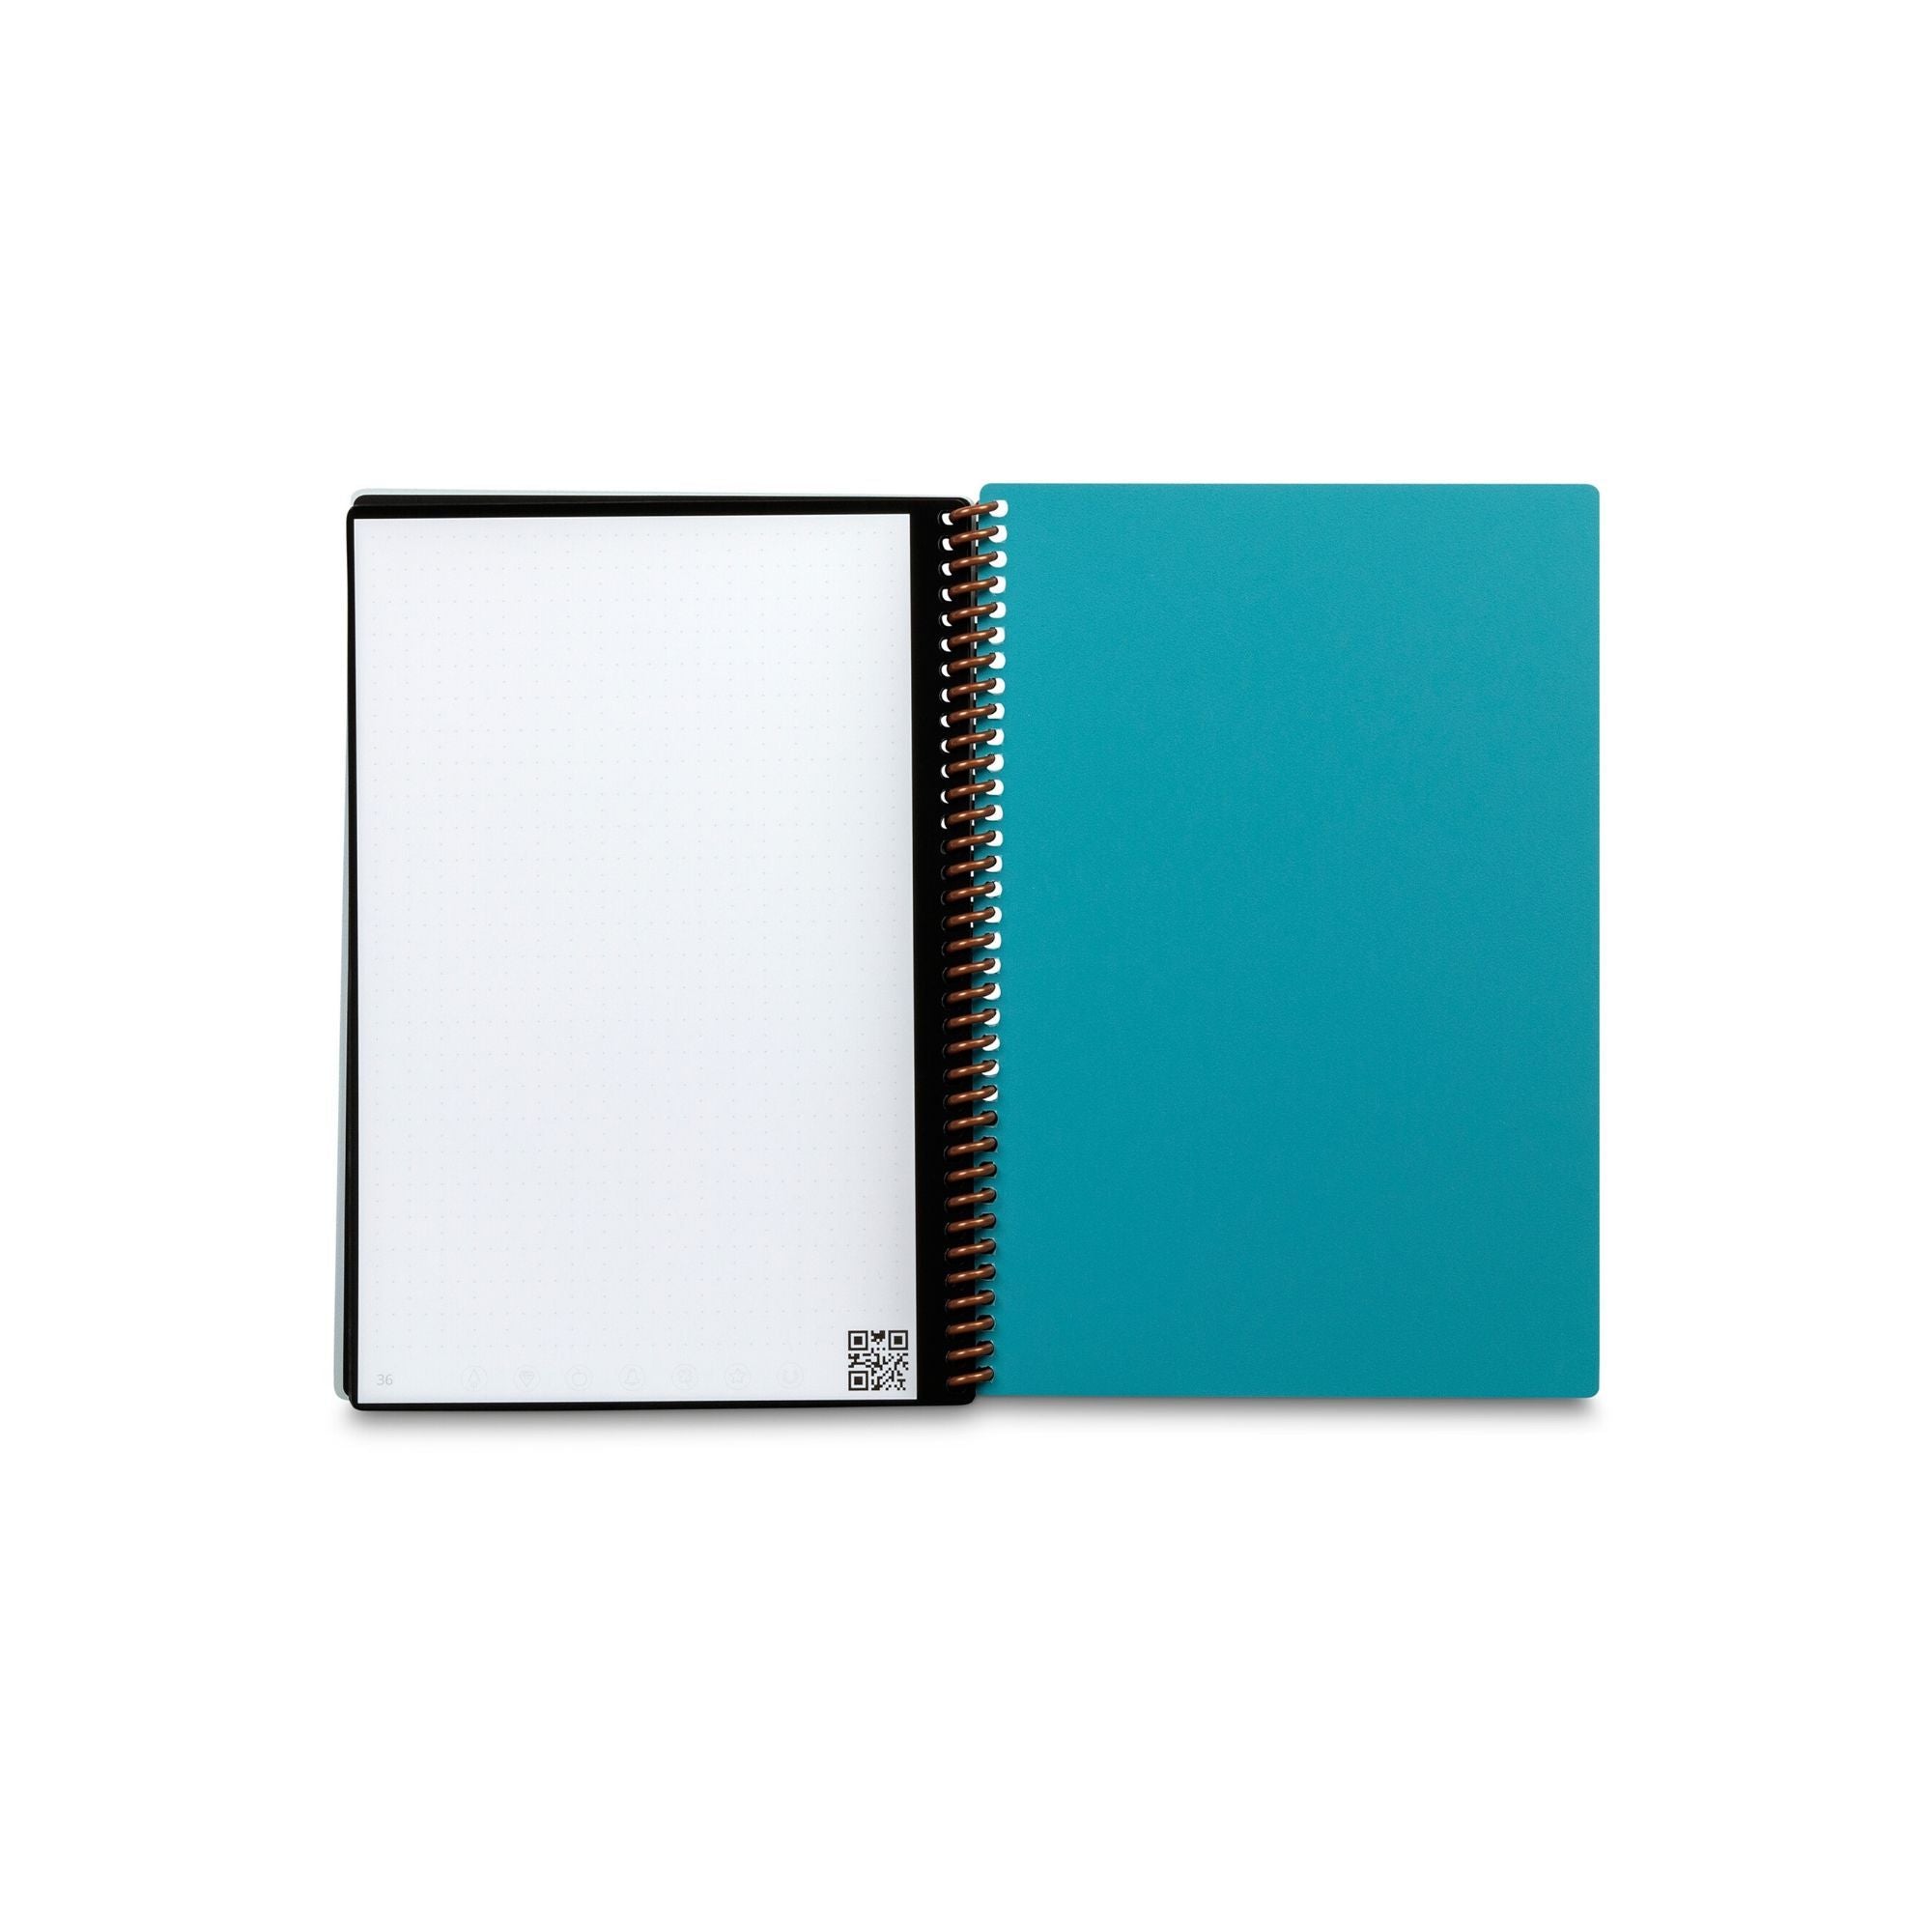 Cuaderno inteligente Rocketbook Core Executive reutilizable Teal